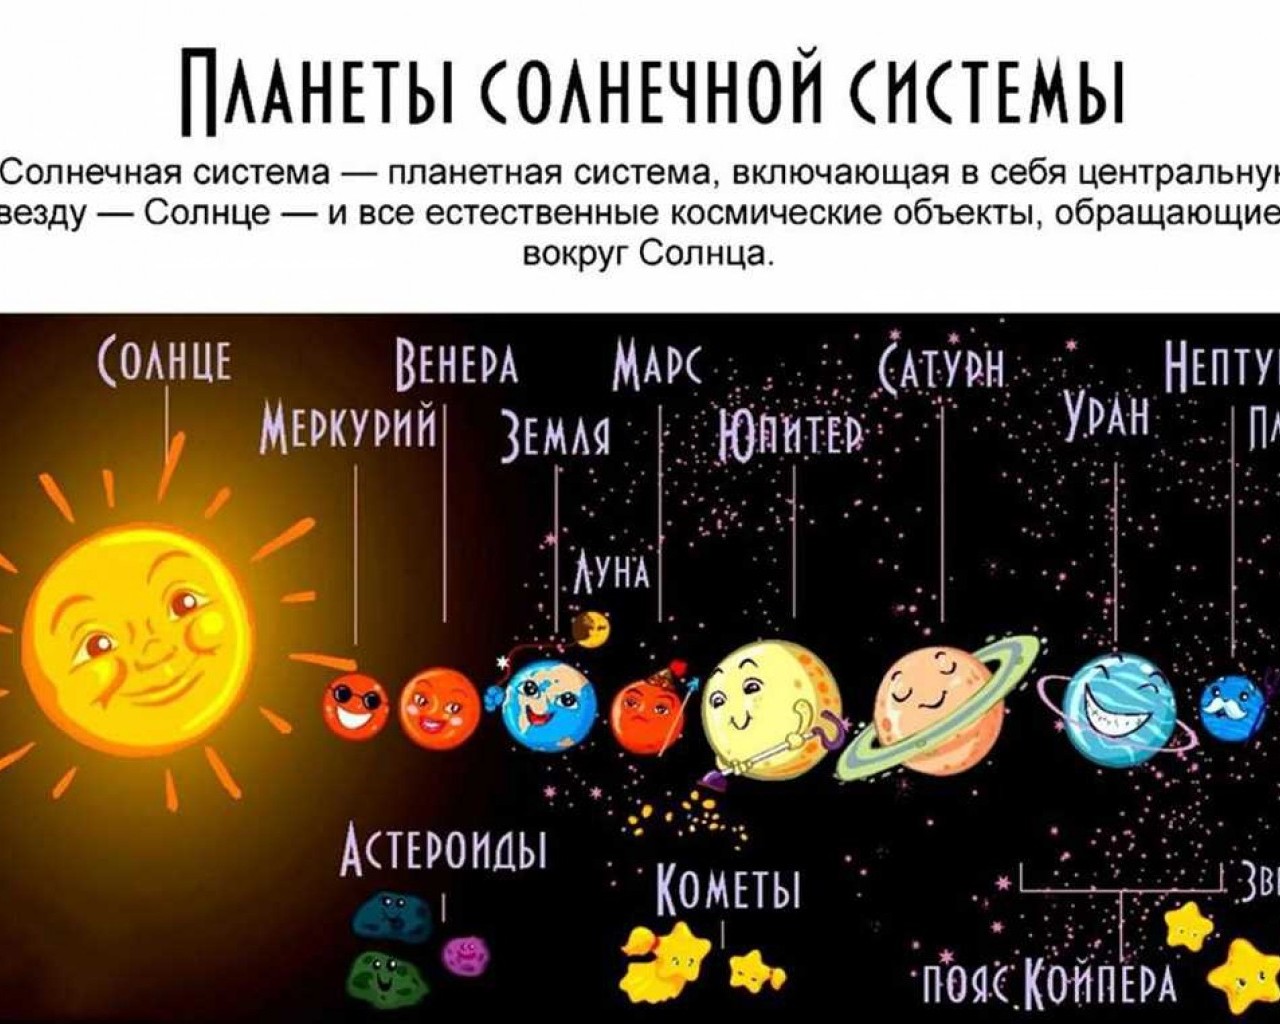 Луна это планета солнечной системы. Солнечная система с названиями планет. Солнечная система с названиями планет для детей. Девять планет солнечной системы. Солнечная система с названиями планет по порядку от солнца для детей.